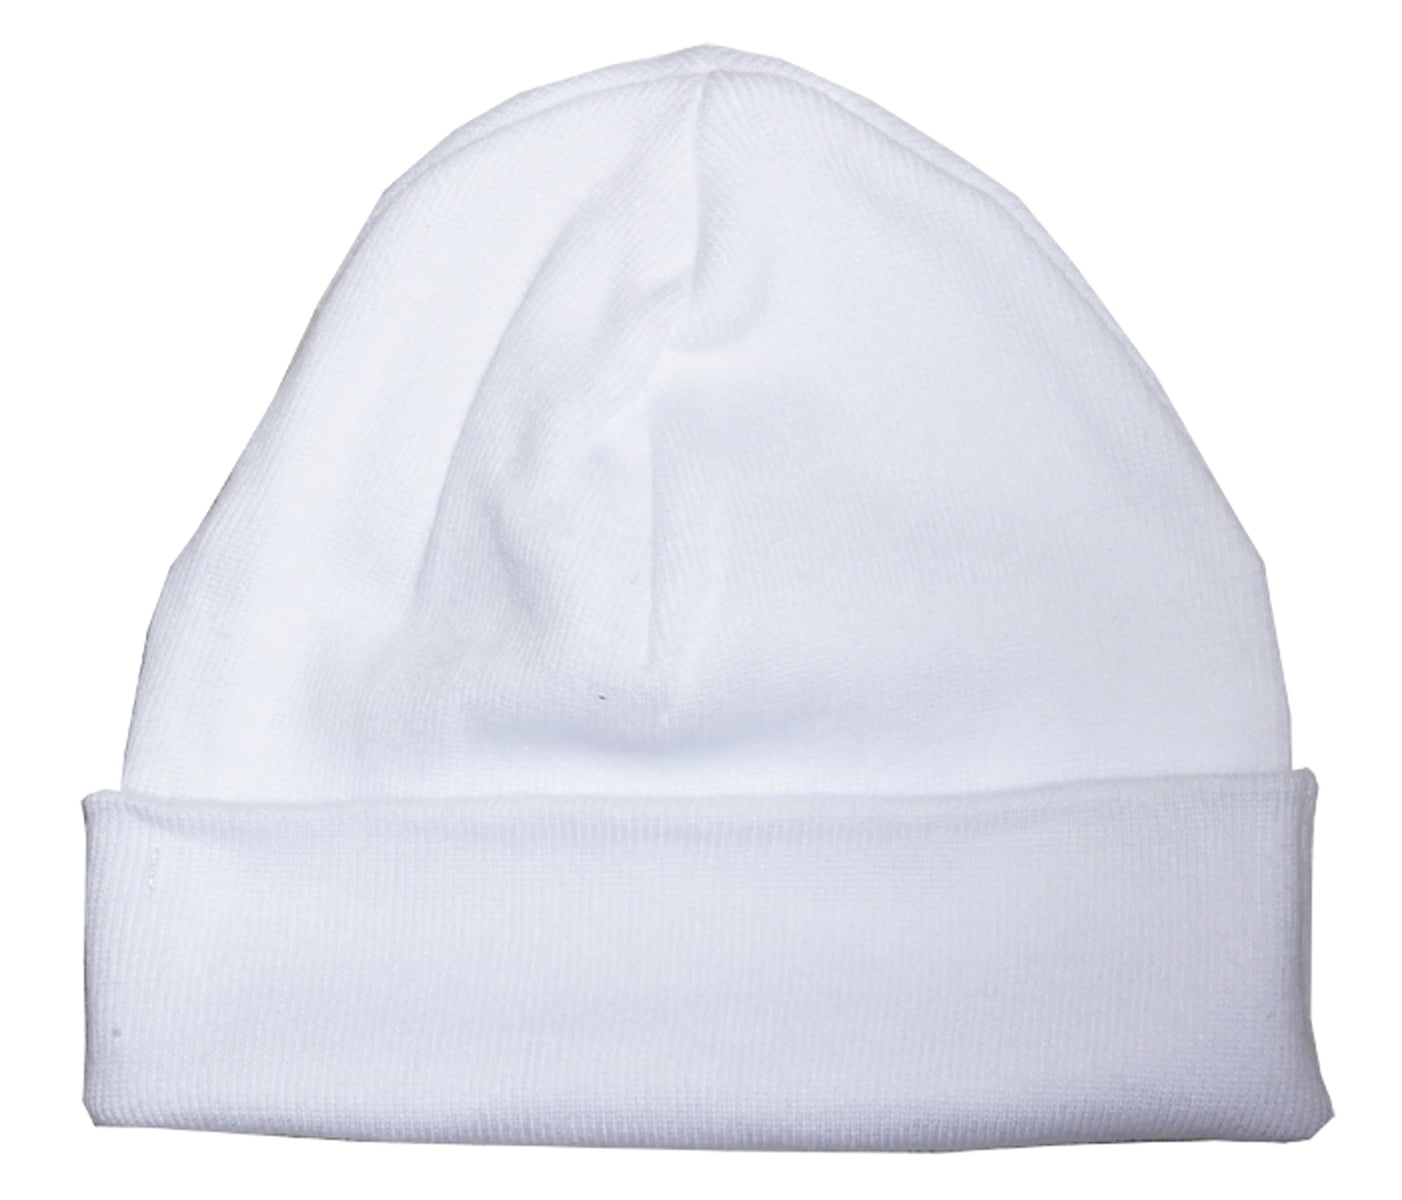 031.white Baby Cap, White